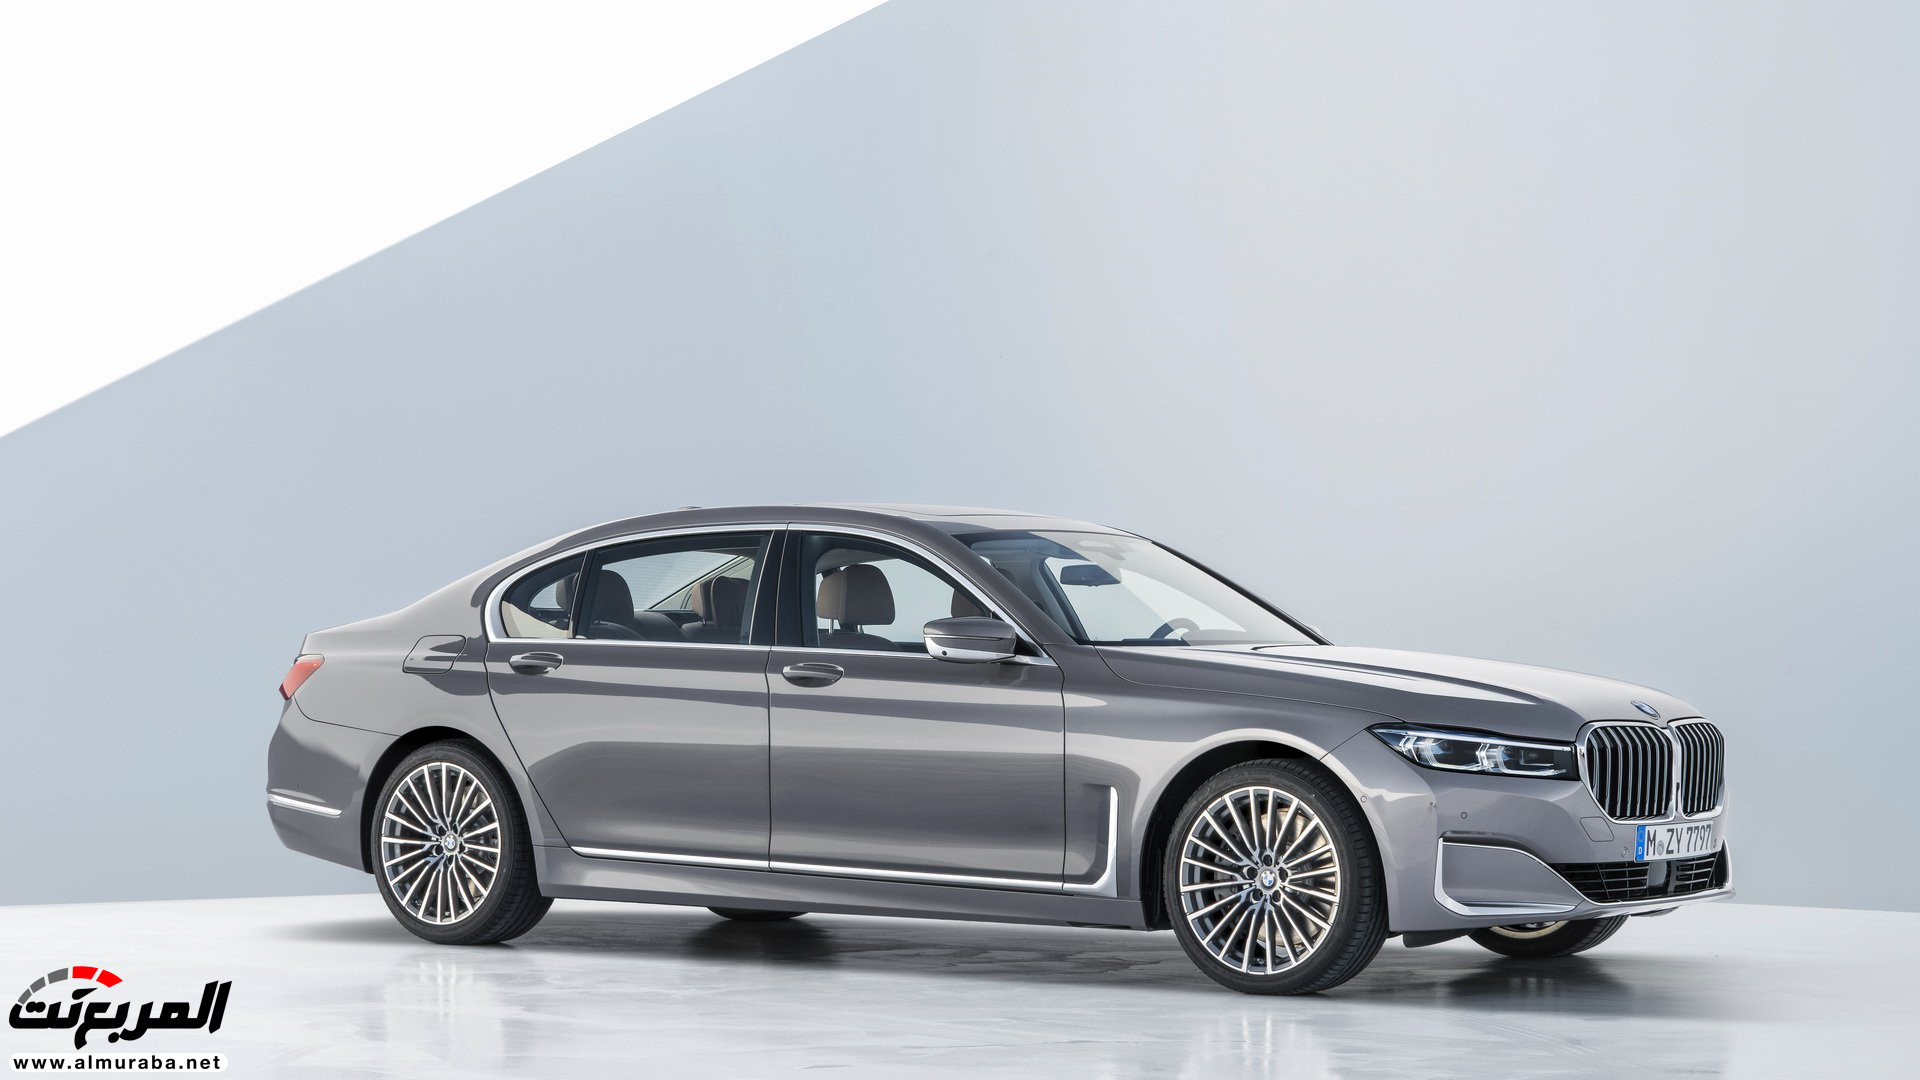 بي ام دبليو الفئة السابعة 2020 المحدثة تكشف نفسها رسمياً "صور ومواصفات" BMW 7 Series 53